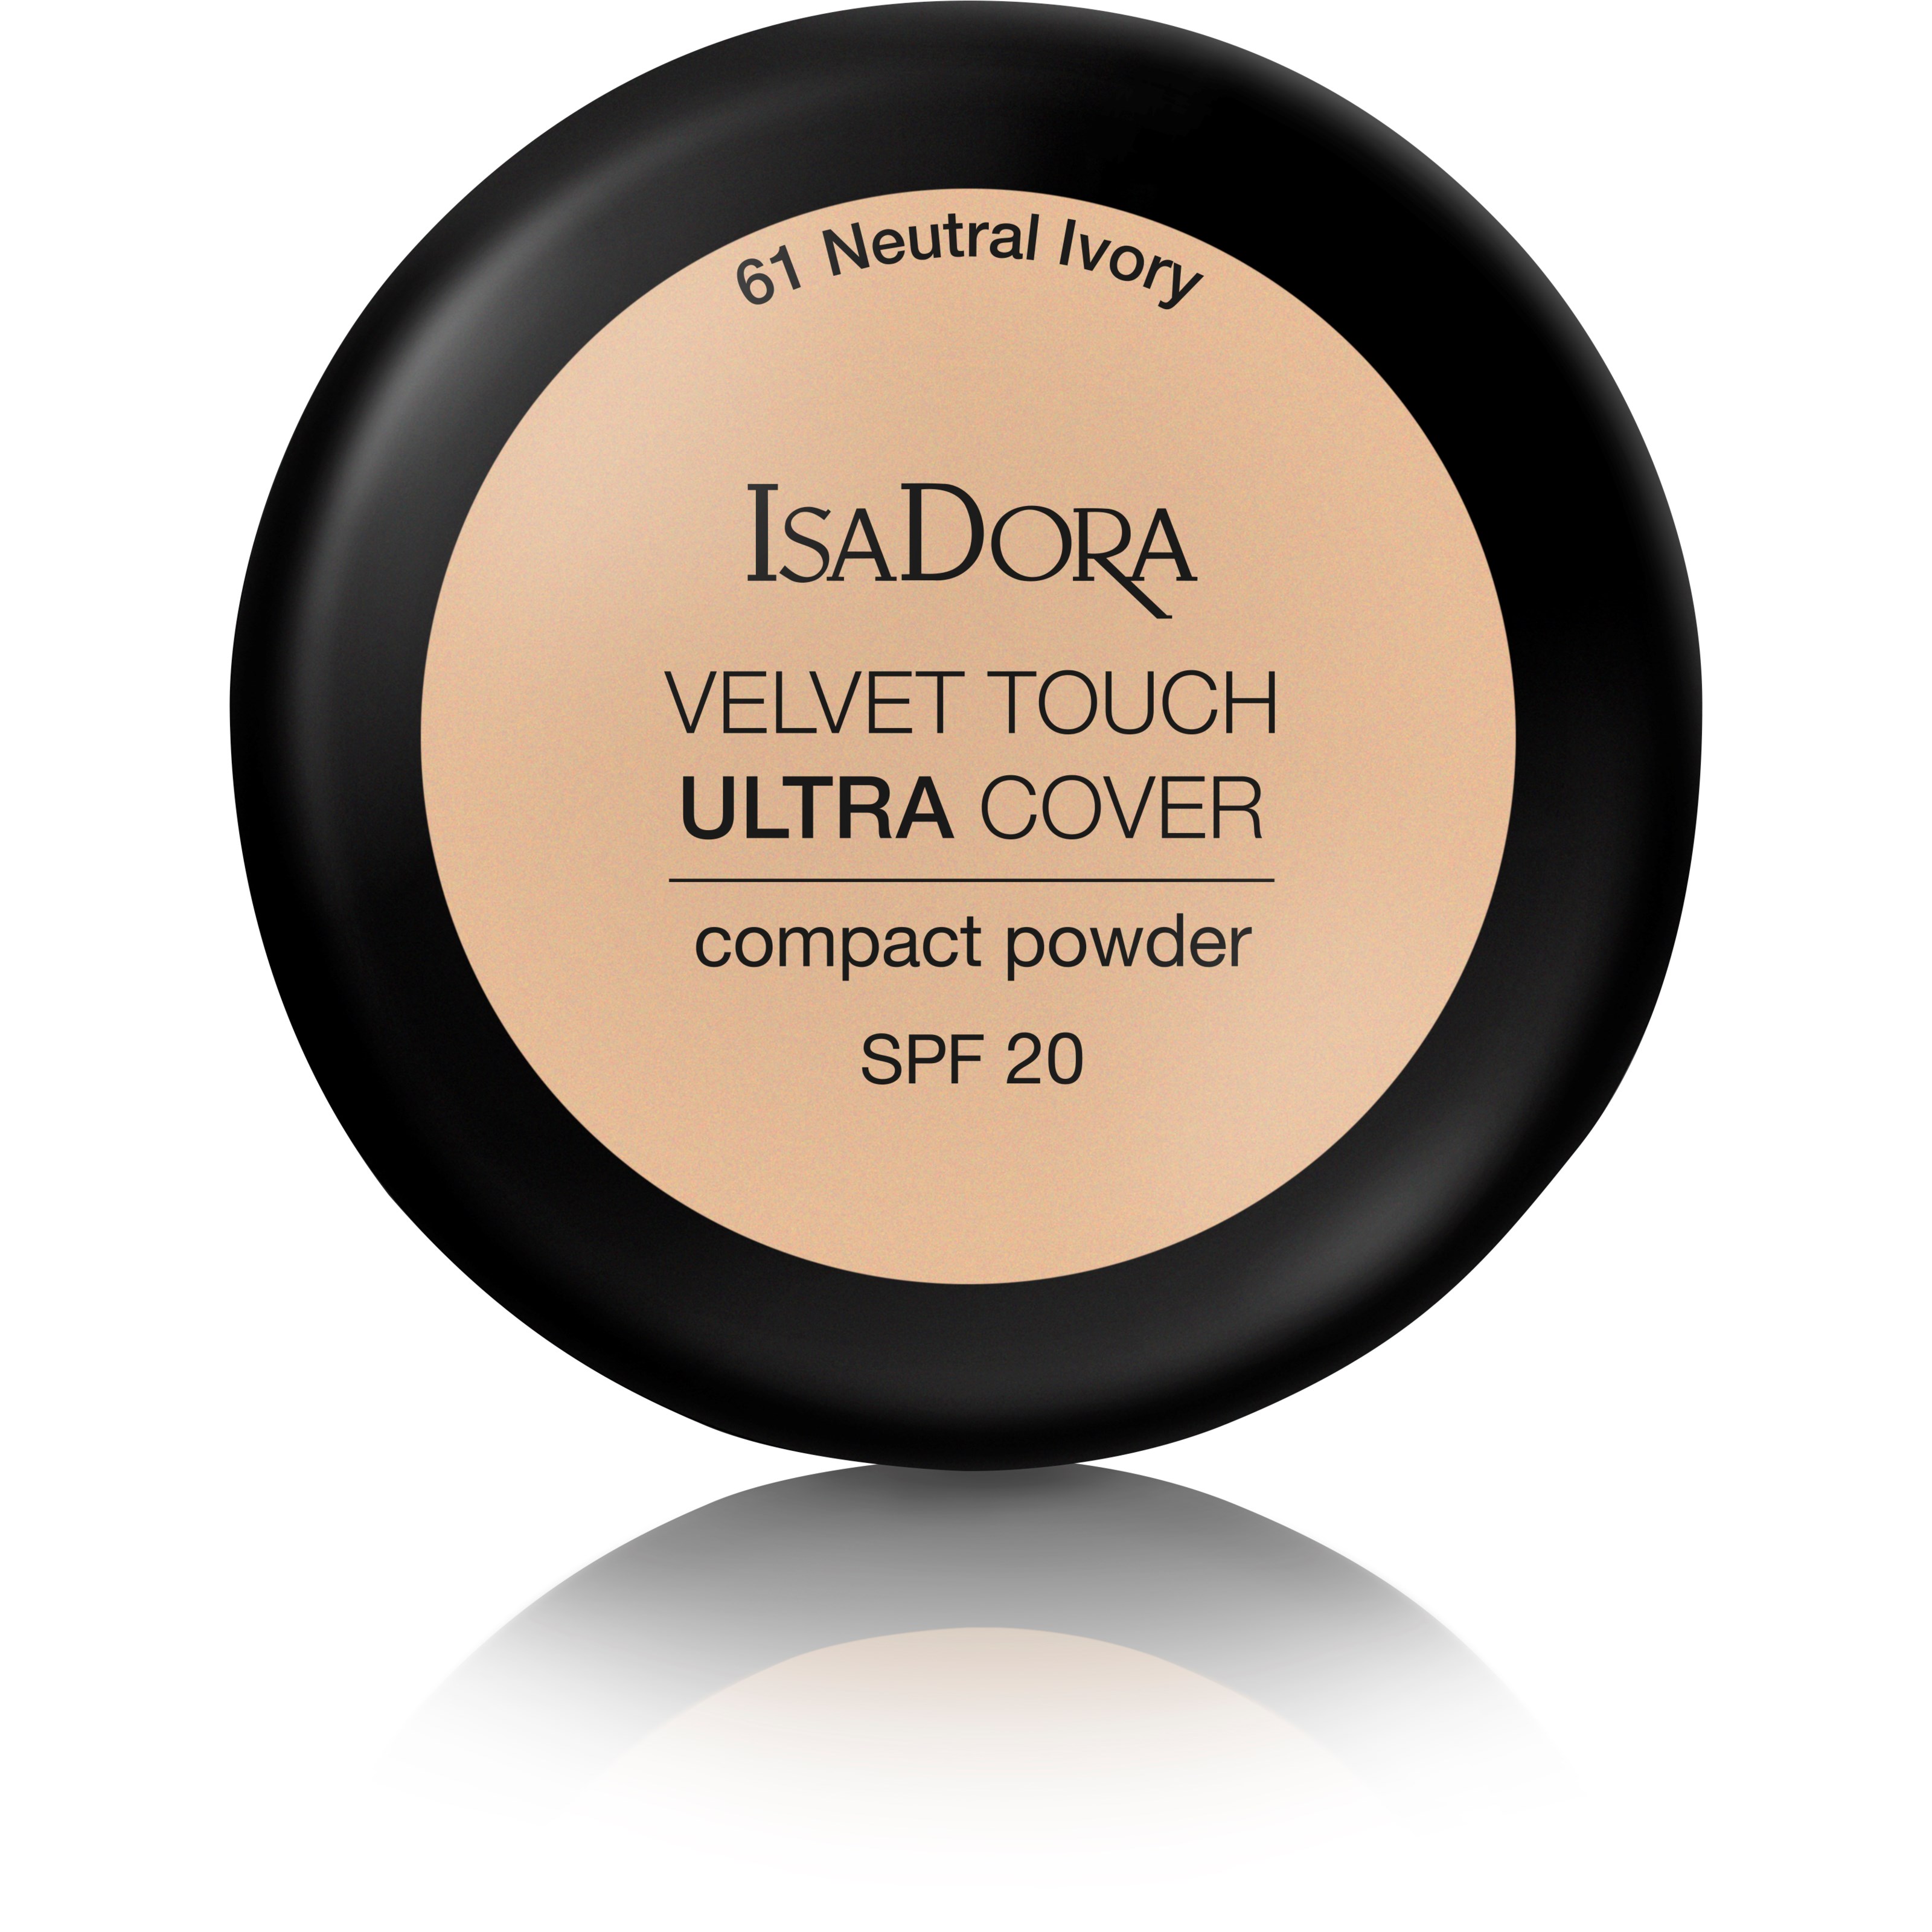 Läs mer om IsaDora Velvet Touch Ultra Cover Compact Power Spf 20 61 Neutral Ivor